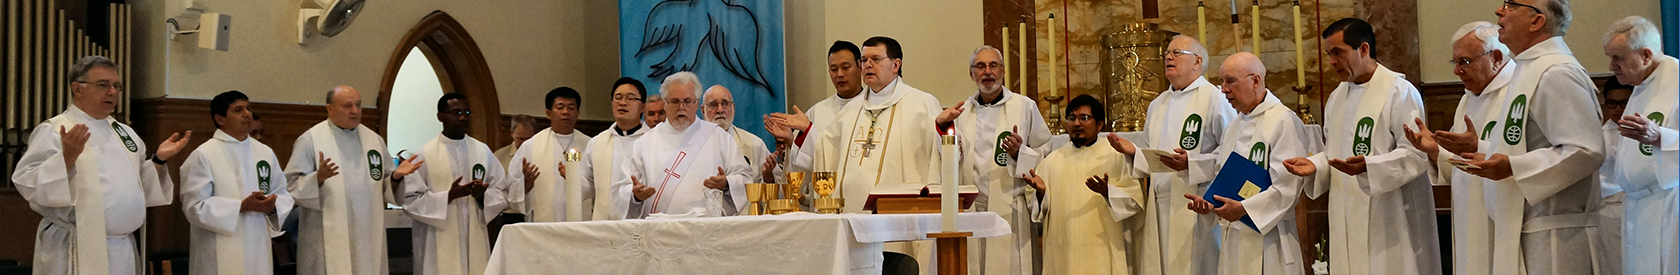 Fr. Luis Lopez’s Ordination at SFM Chapel (July 11, 2015)